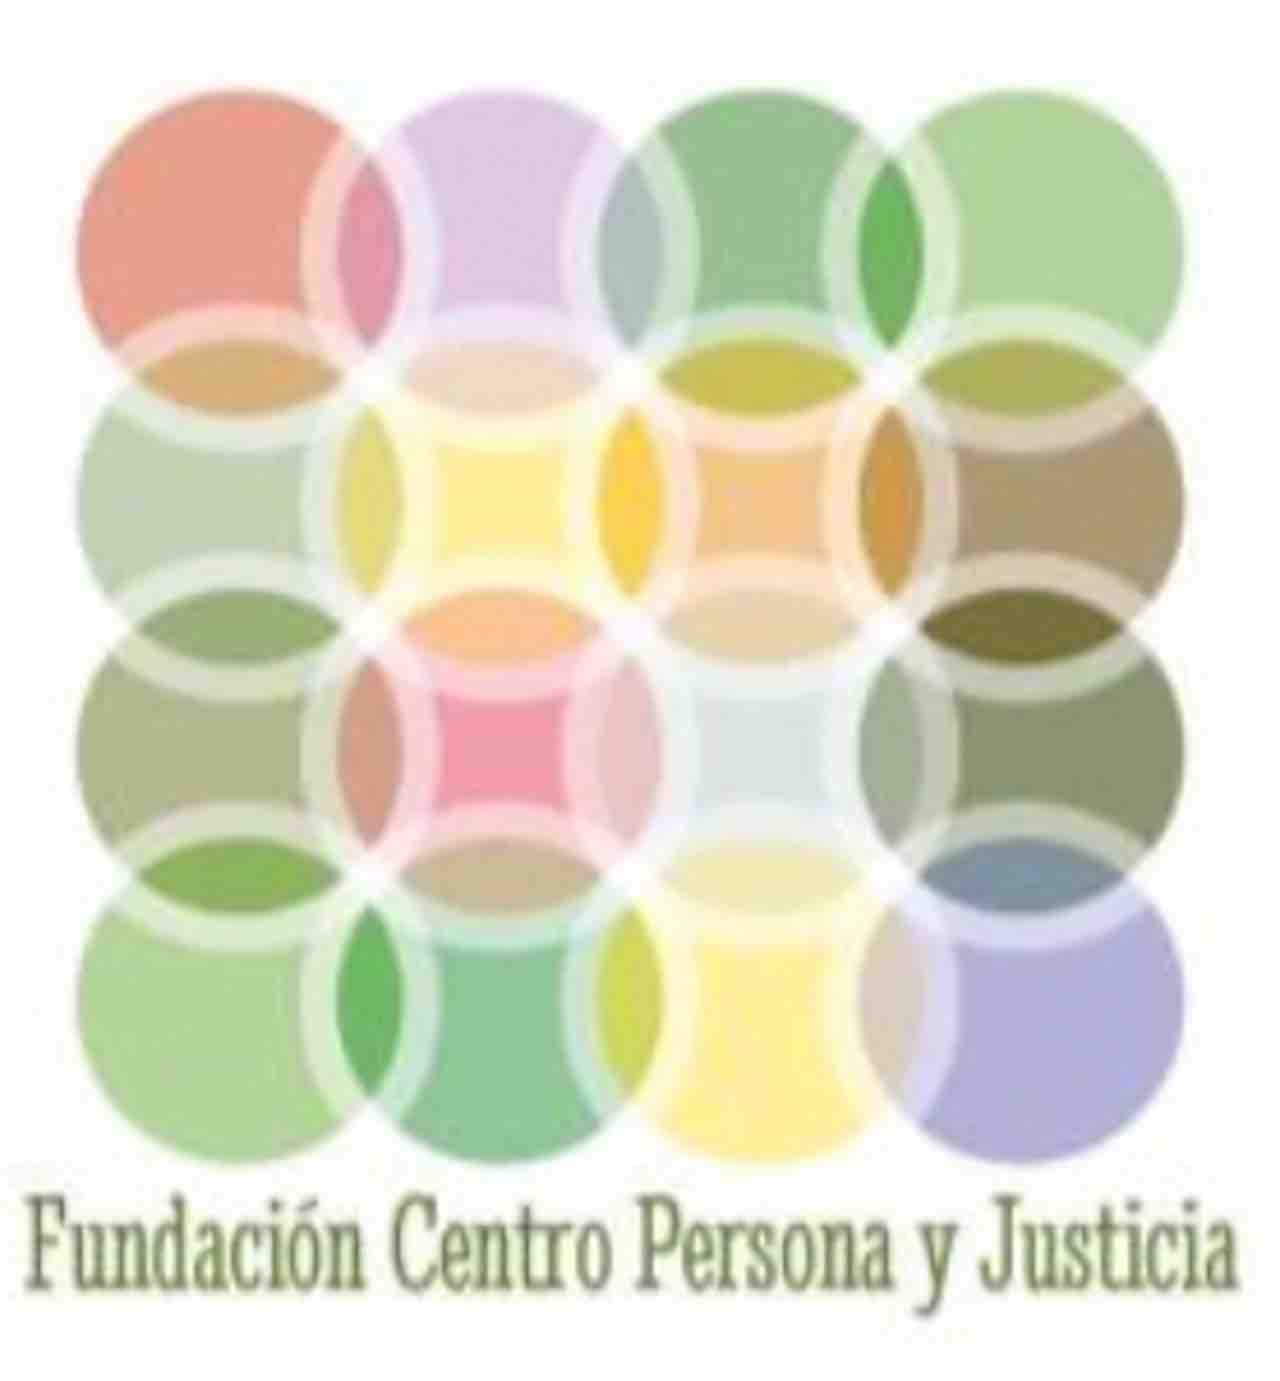 Centro Persona y justicia